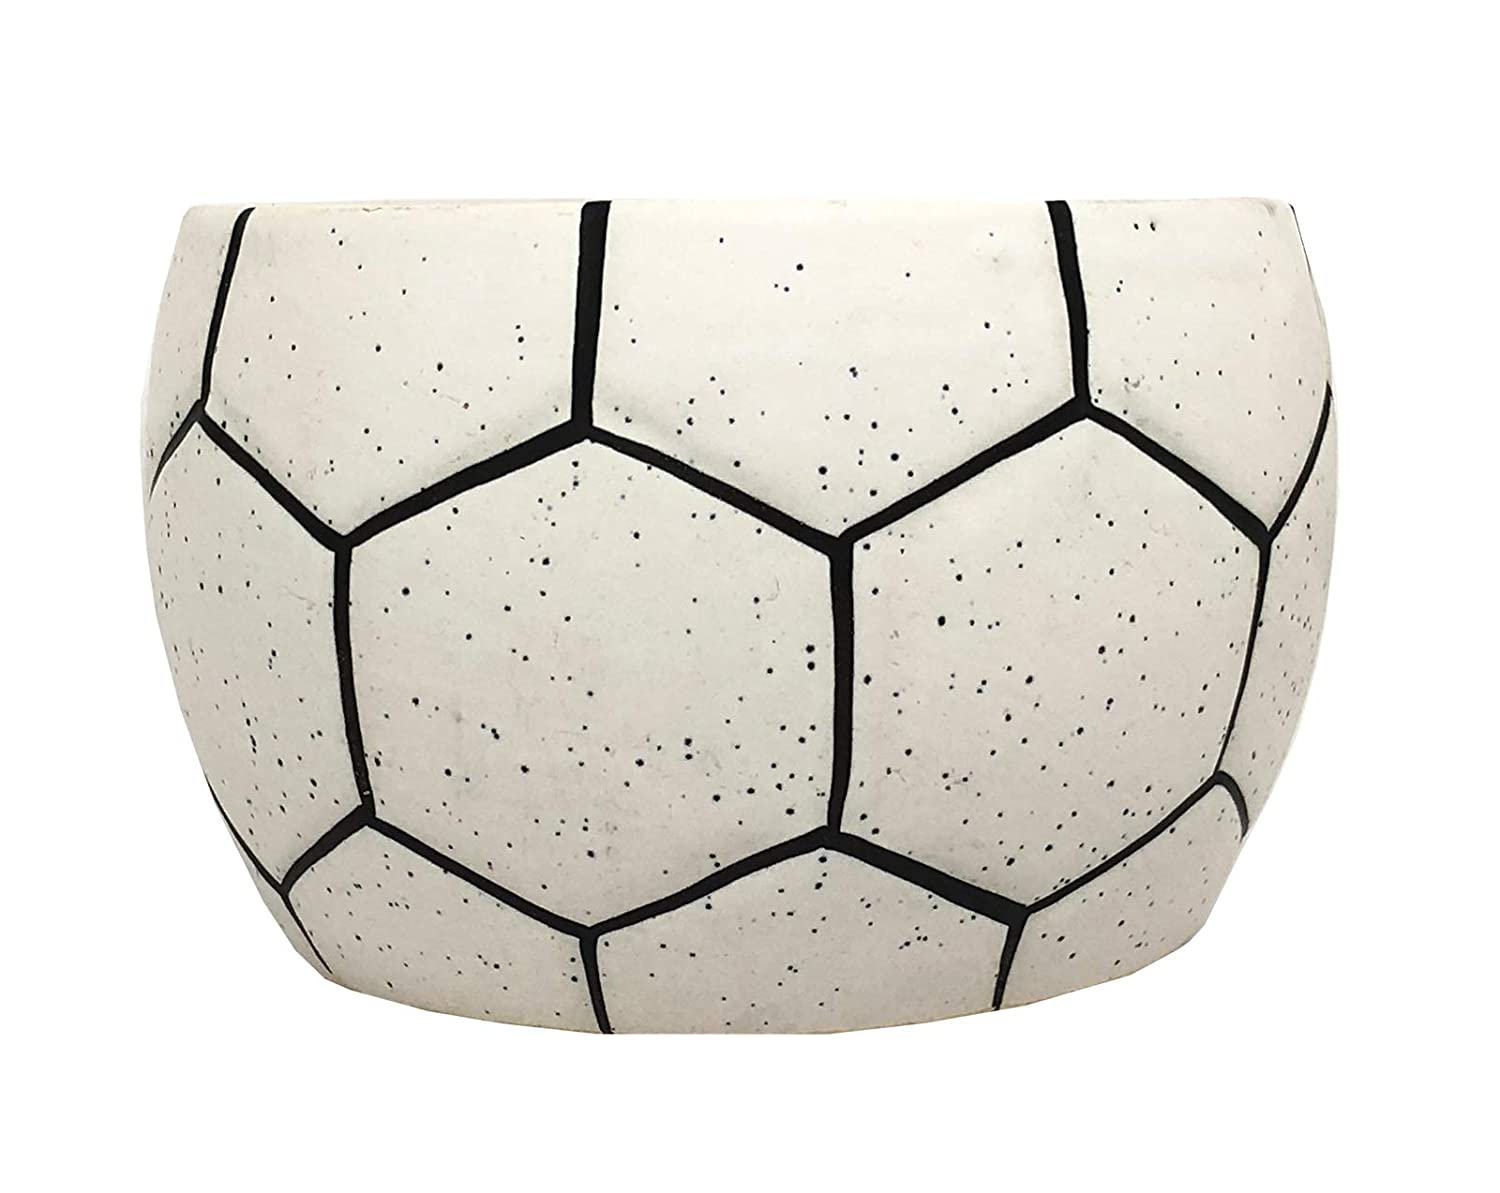 Football Shape Handcrafted Ceramic Pots Ceramic Planter for Indoor Plants/Planters,Home Decor,Garden Decor,Office Decor,Decorative Succulent Pot (Color: White)(L:15 cm, W:15 cm, H:10 cm)